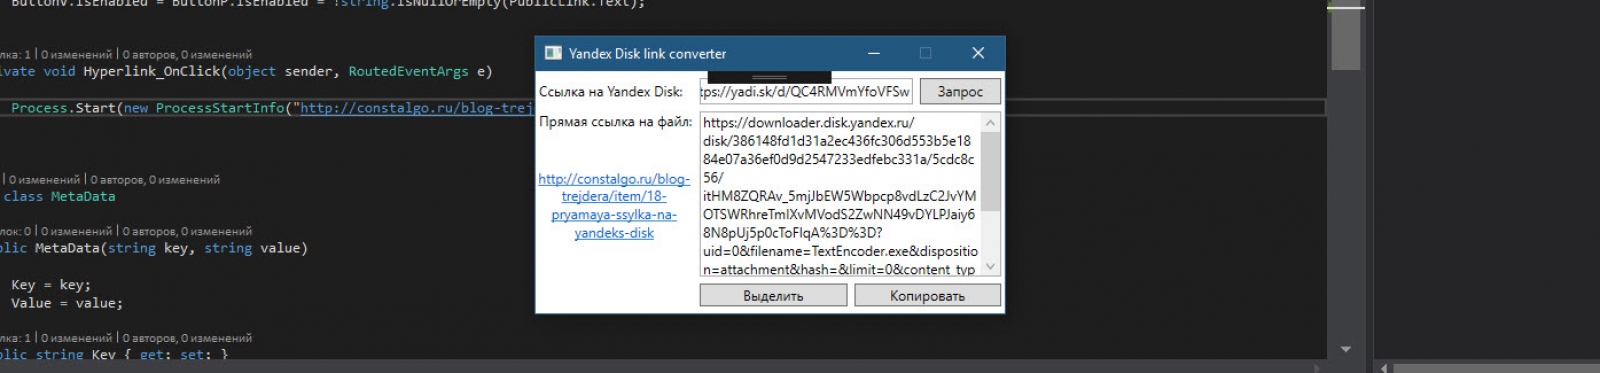 Прямая ссылка на Yandex Disk - PublicYandexSdk.exe